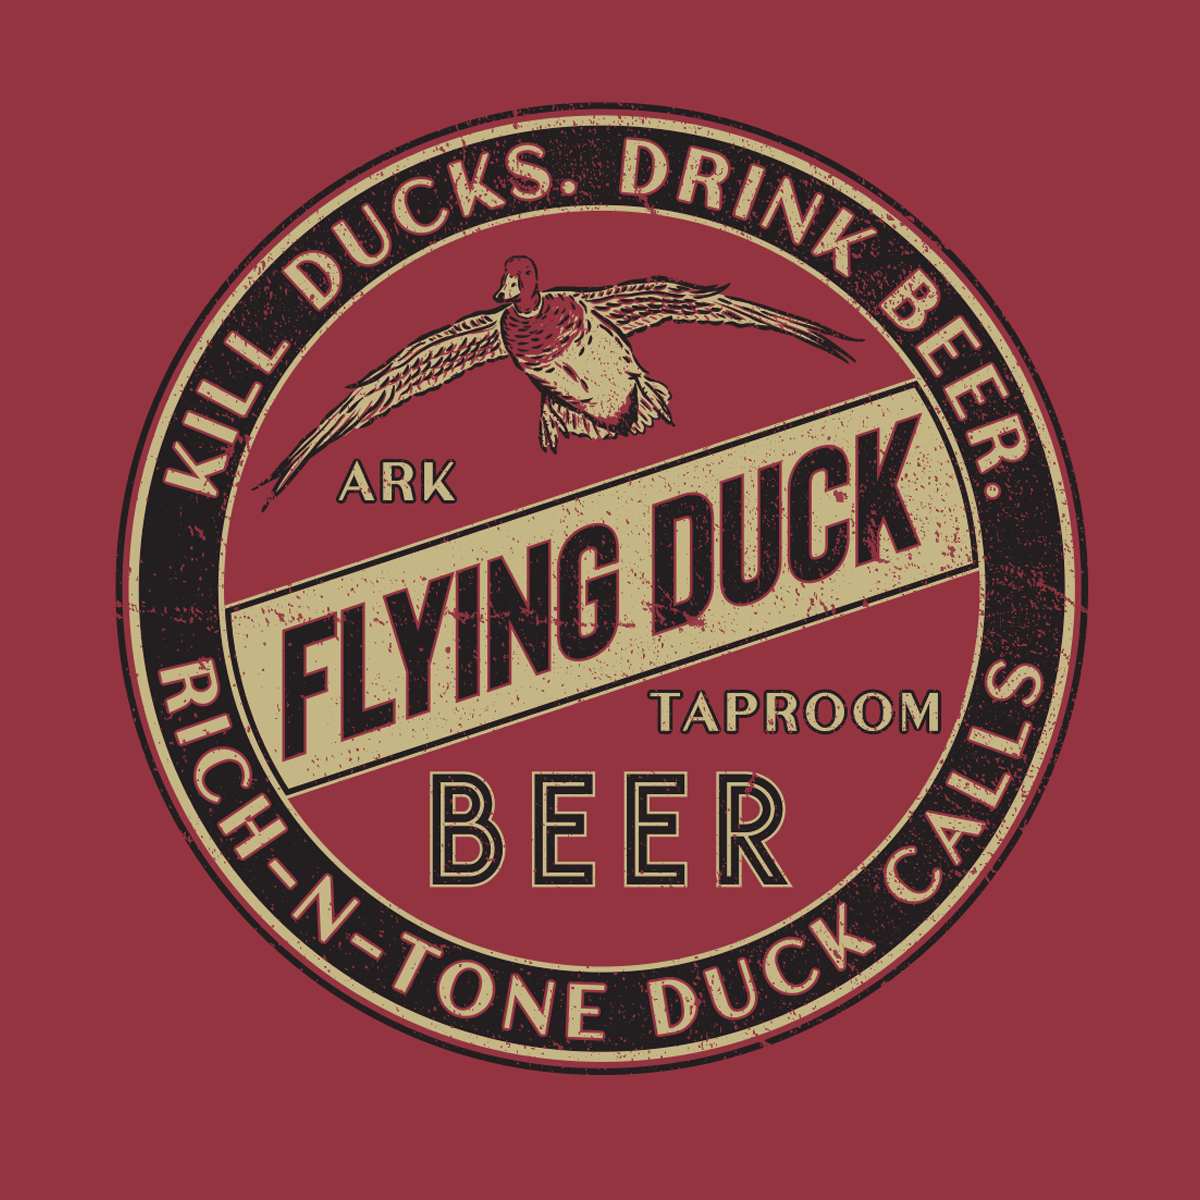 Kill Ducks Drink Beer - Crimson